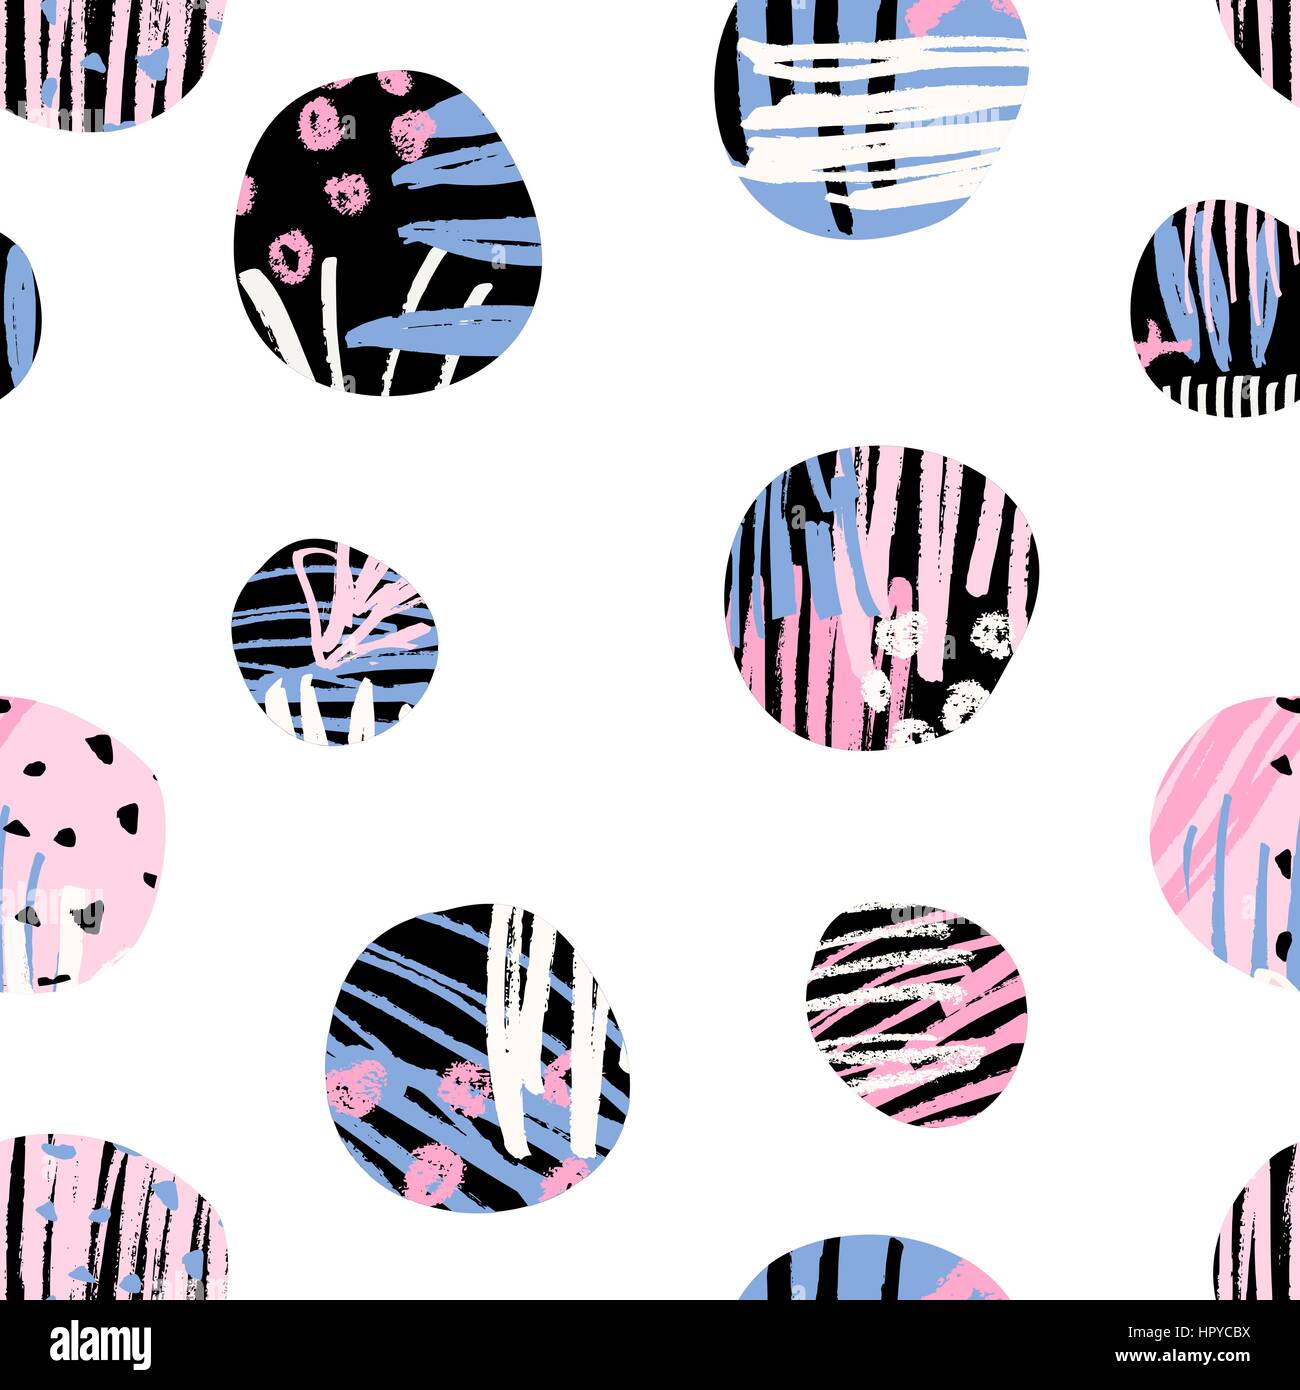 Seamless wiederholen Muster mit runden Formen in schwarz, blau und Pink texturiert, isoliert auf weißem Hintergrund. Stock Vektor